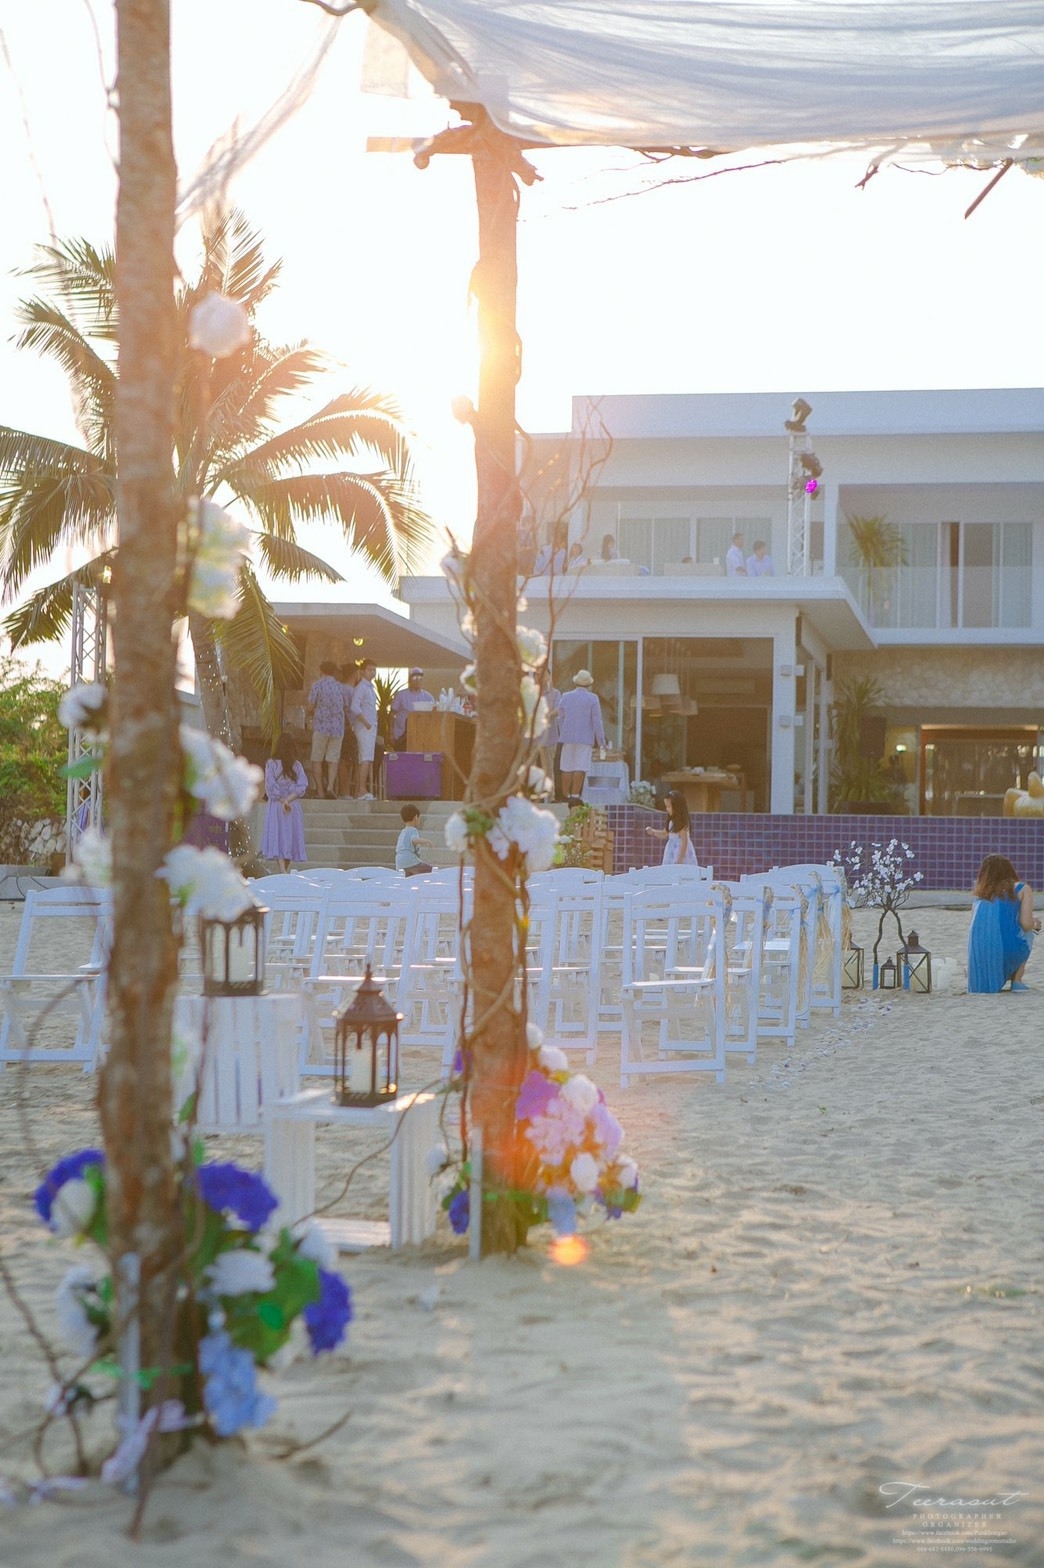 Wedding Proposals at Vela villa